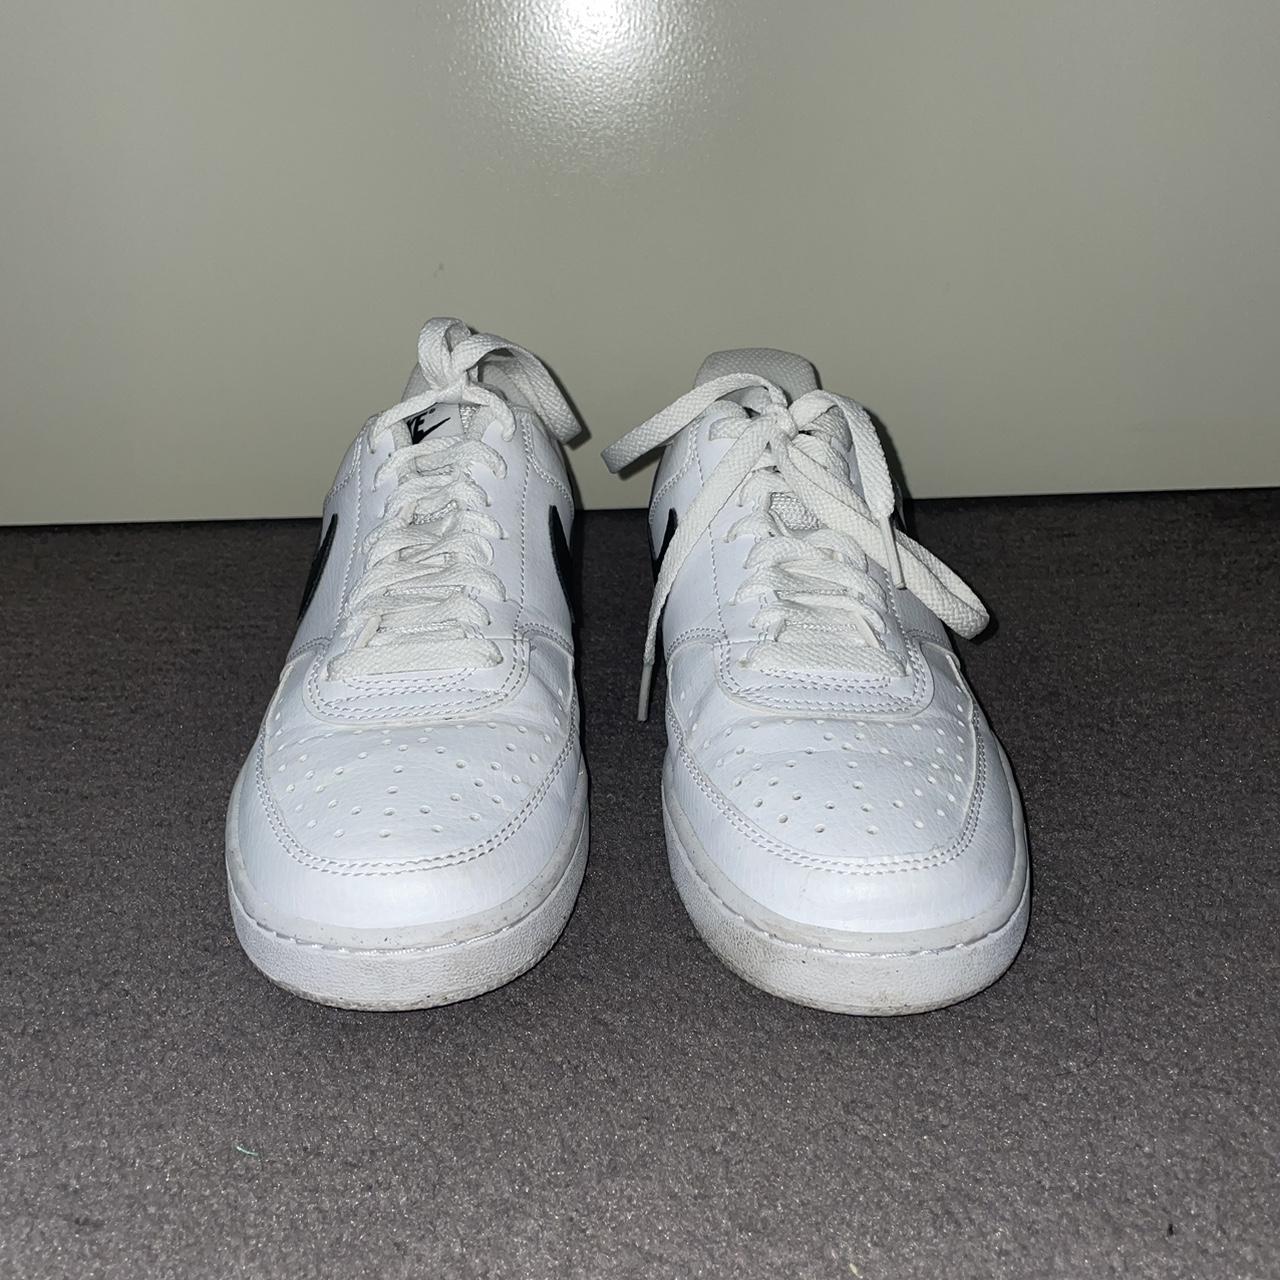 Nike Sneakers. Size EU38. Worn but still in very... - Depop